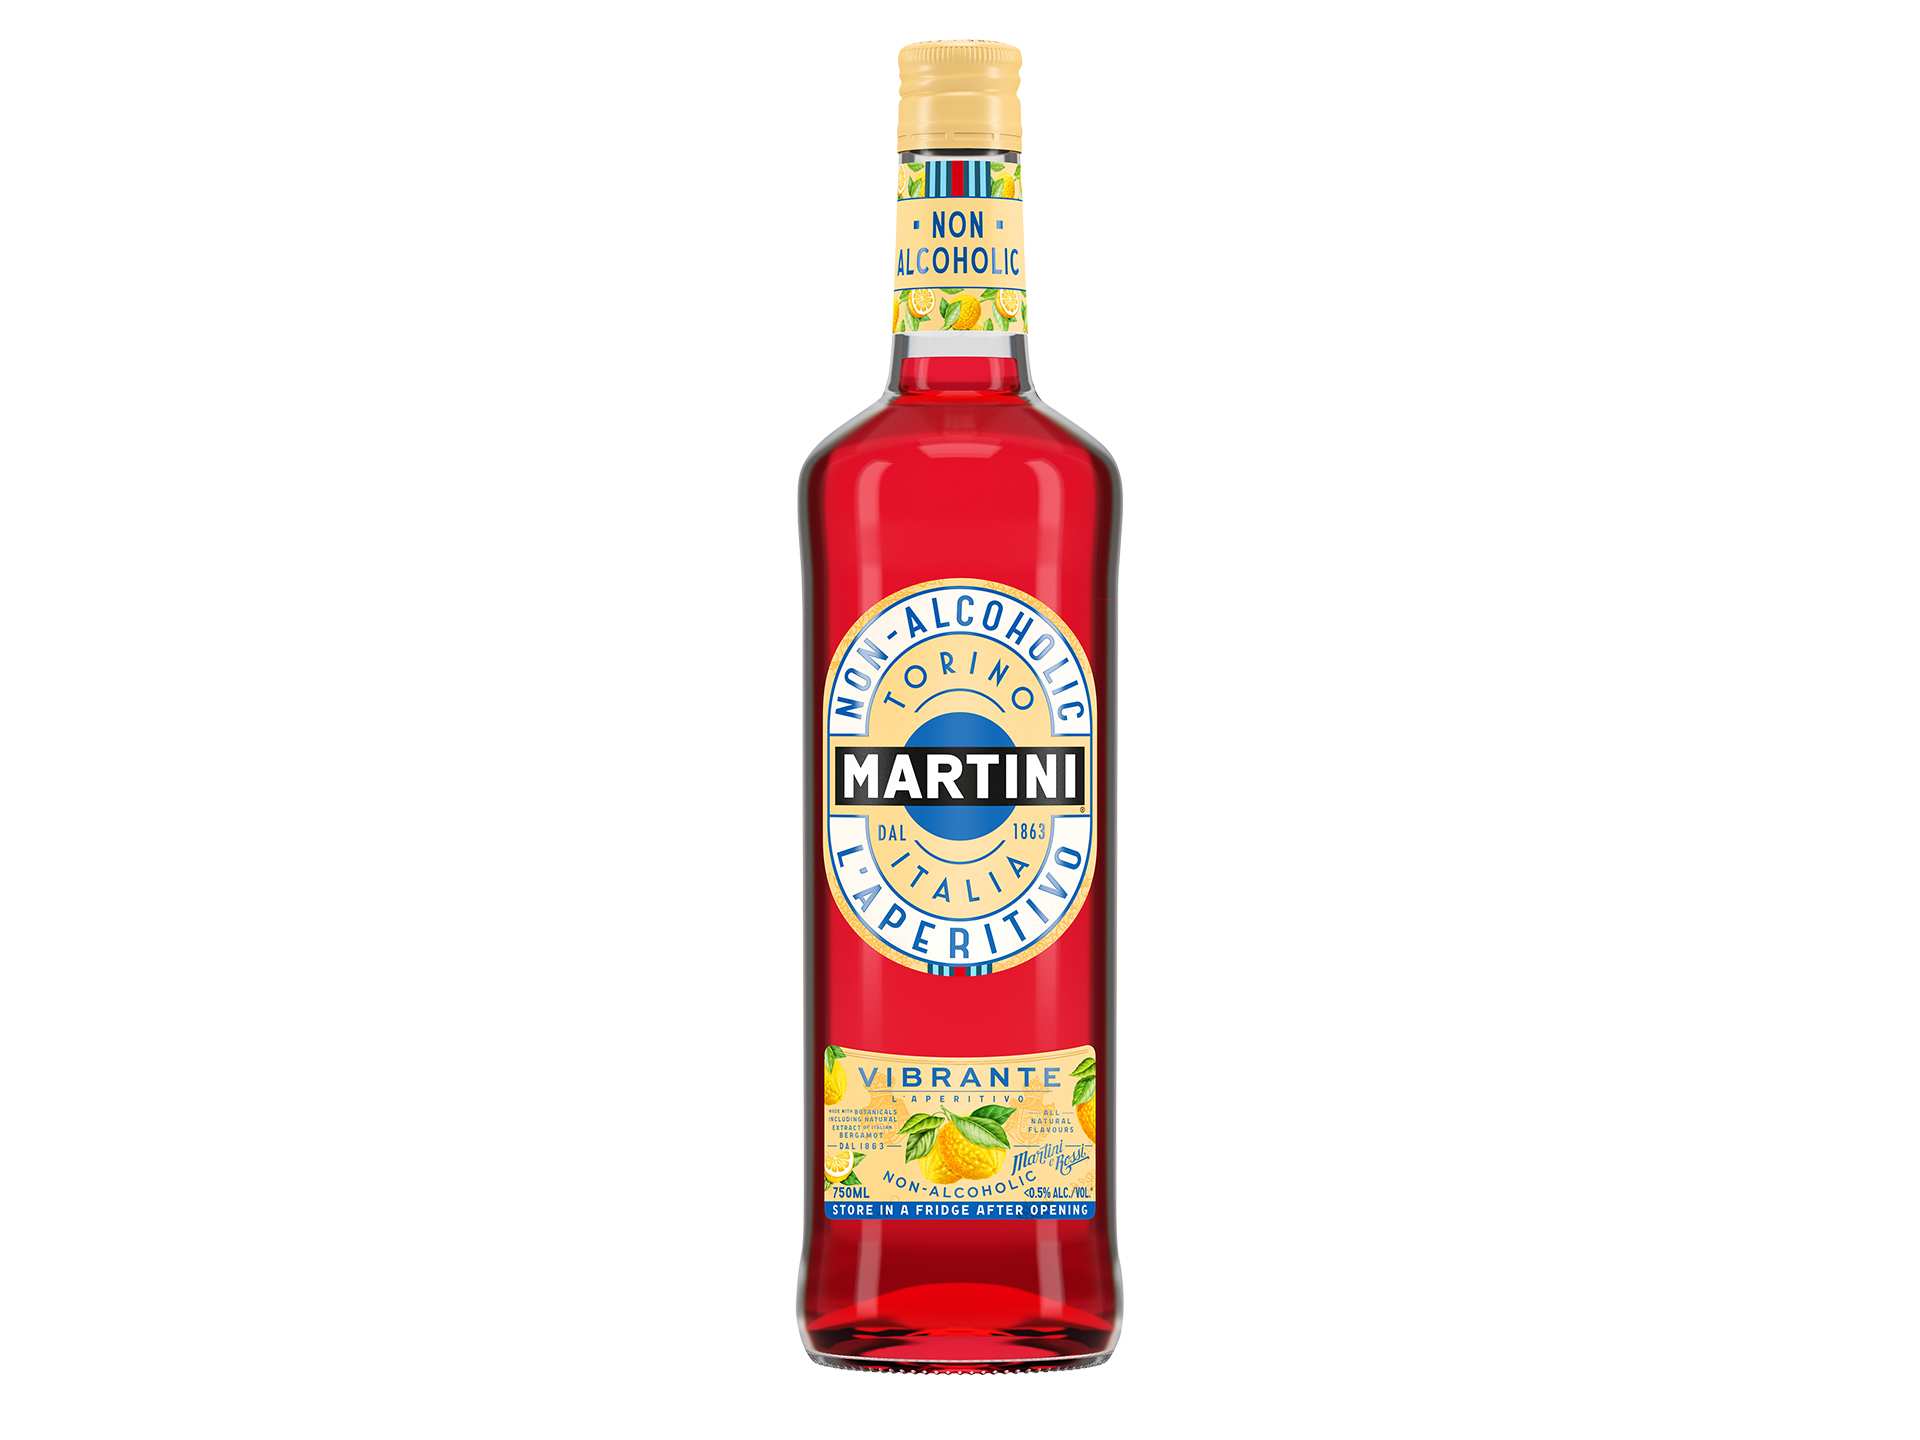 Non-alcoholic wine and non-alcoholic beer | Martini Vibrante non-alcoholic